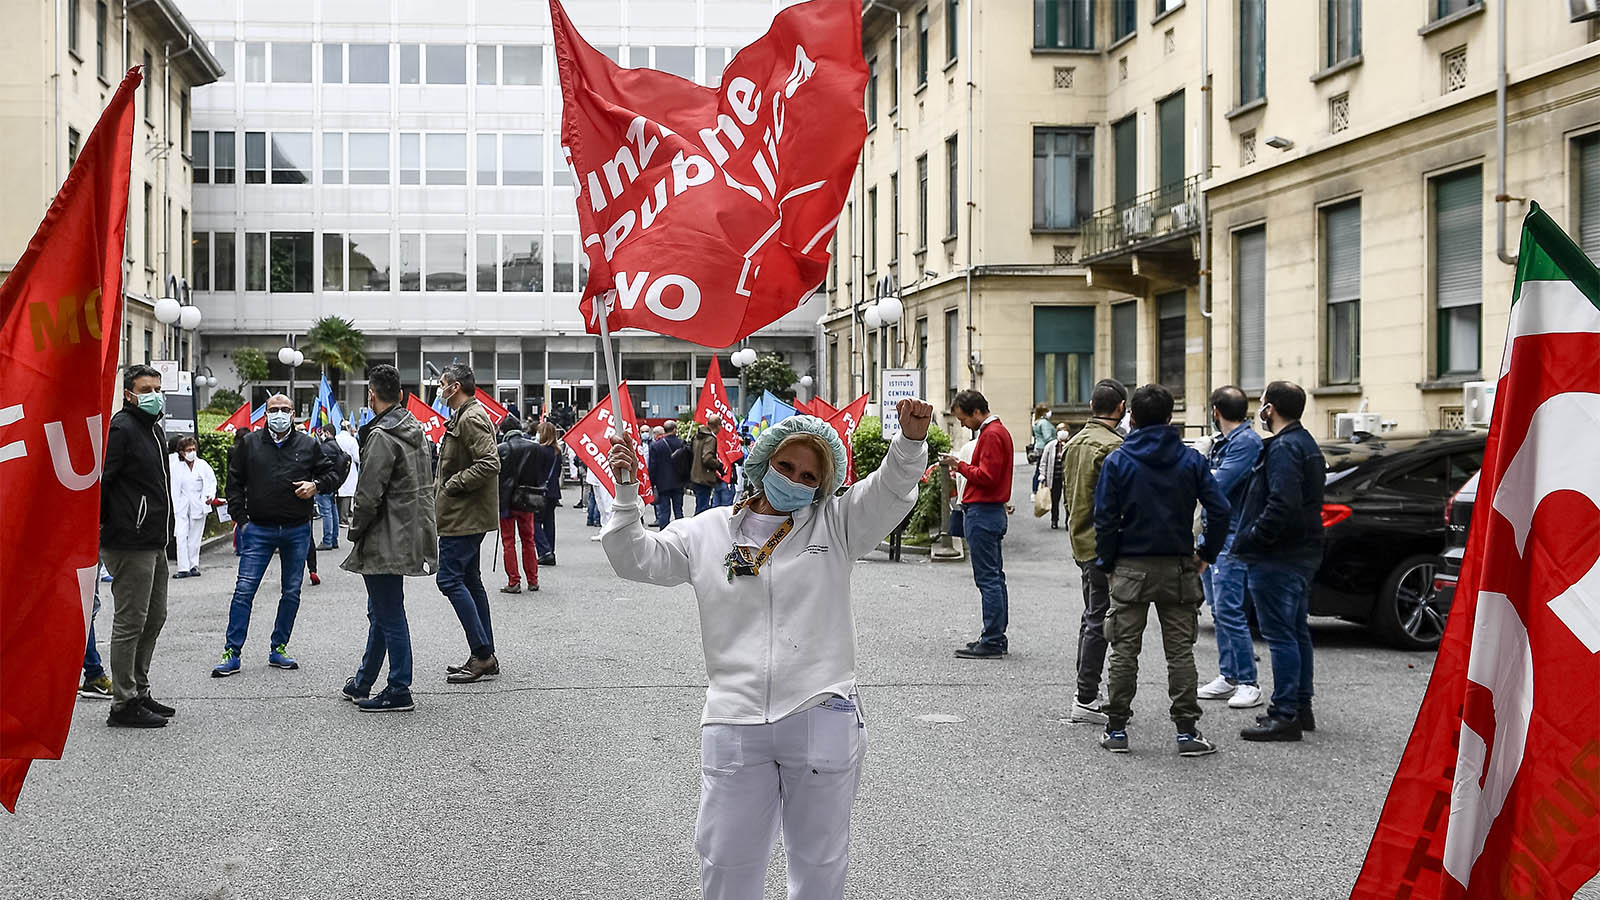 מטפלים מפגינים באיטליה למען שיפור תנאי עבודתם והגנה עליהם בימי הקורונה, 30 באפריל 2020 (Photo by Nicolò Campo/LightRocket via Getty Images)